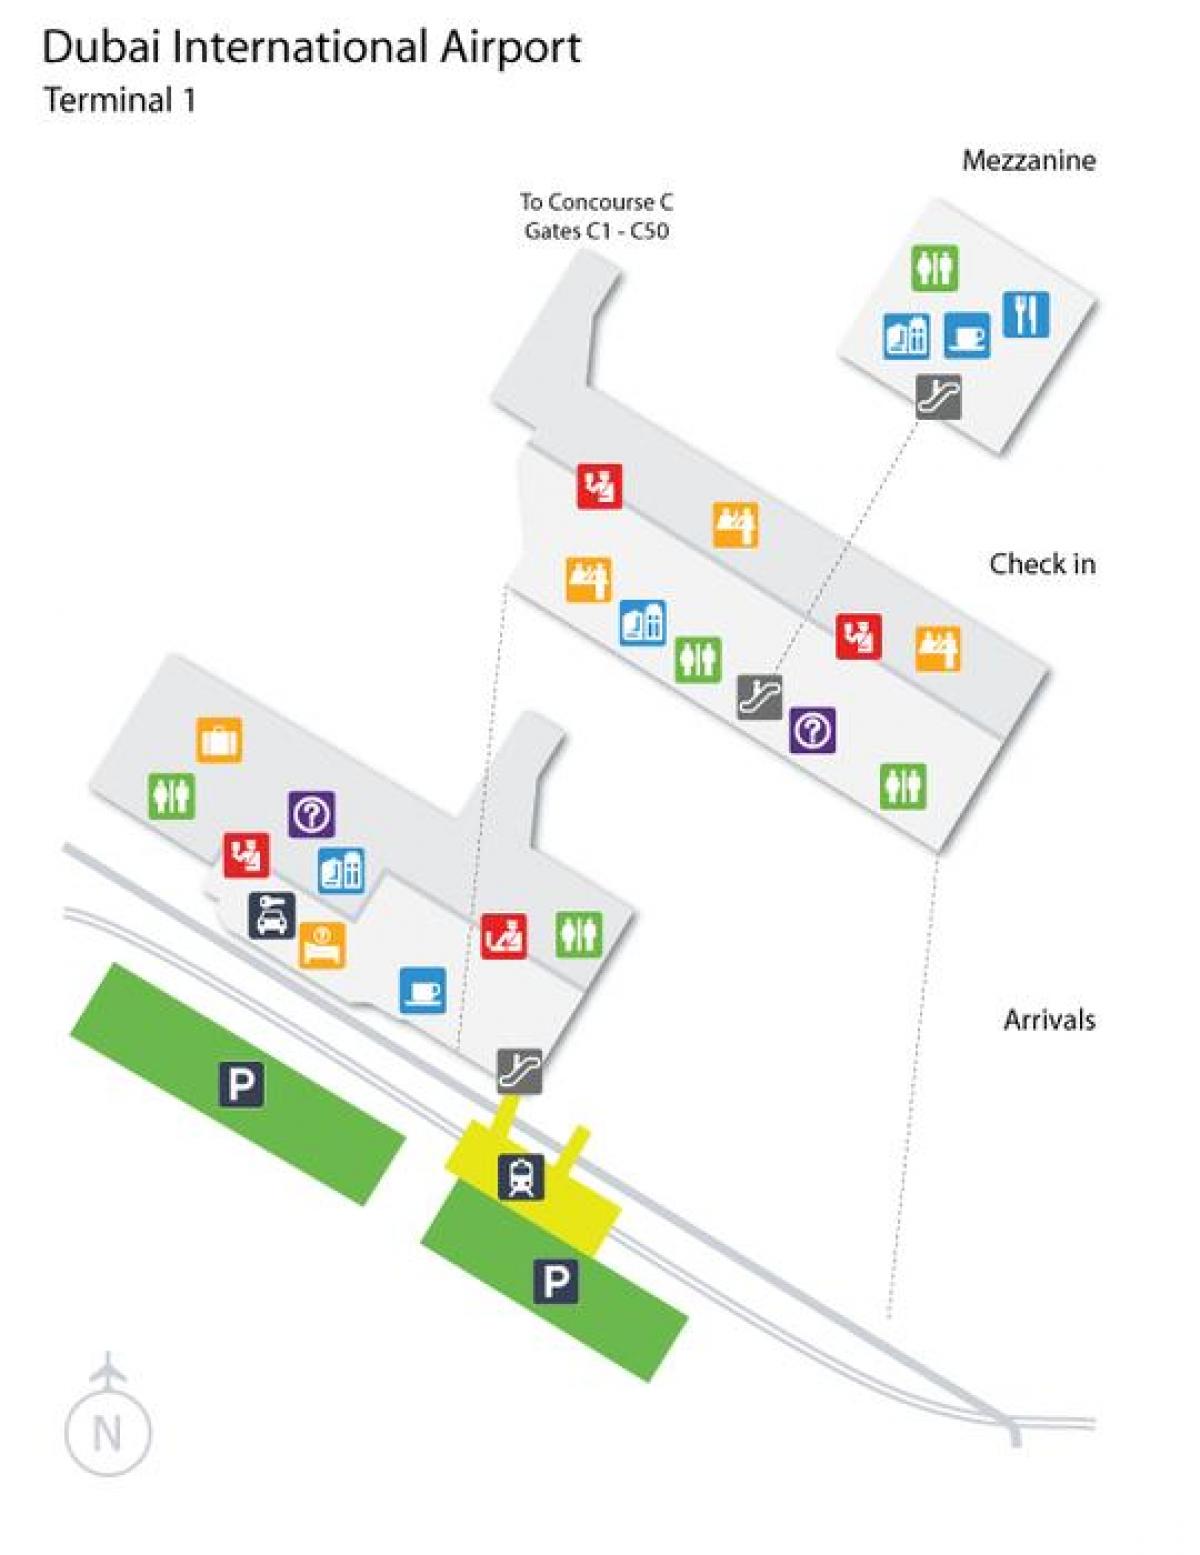 Dubai airport terminal 1 plassering kart